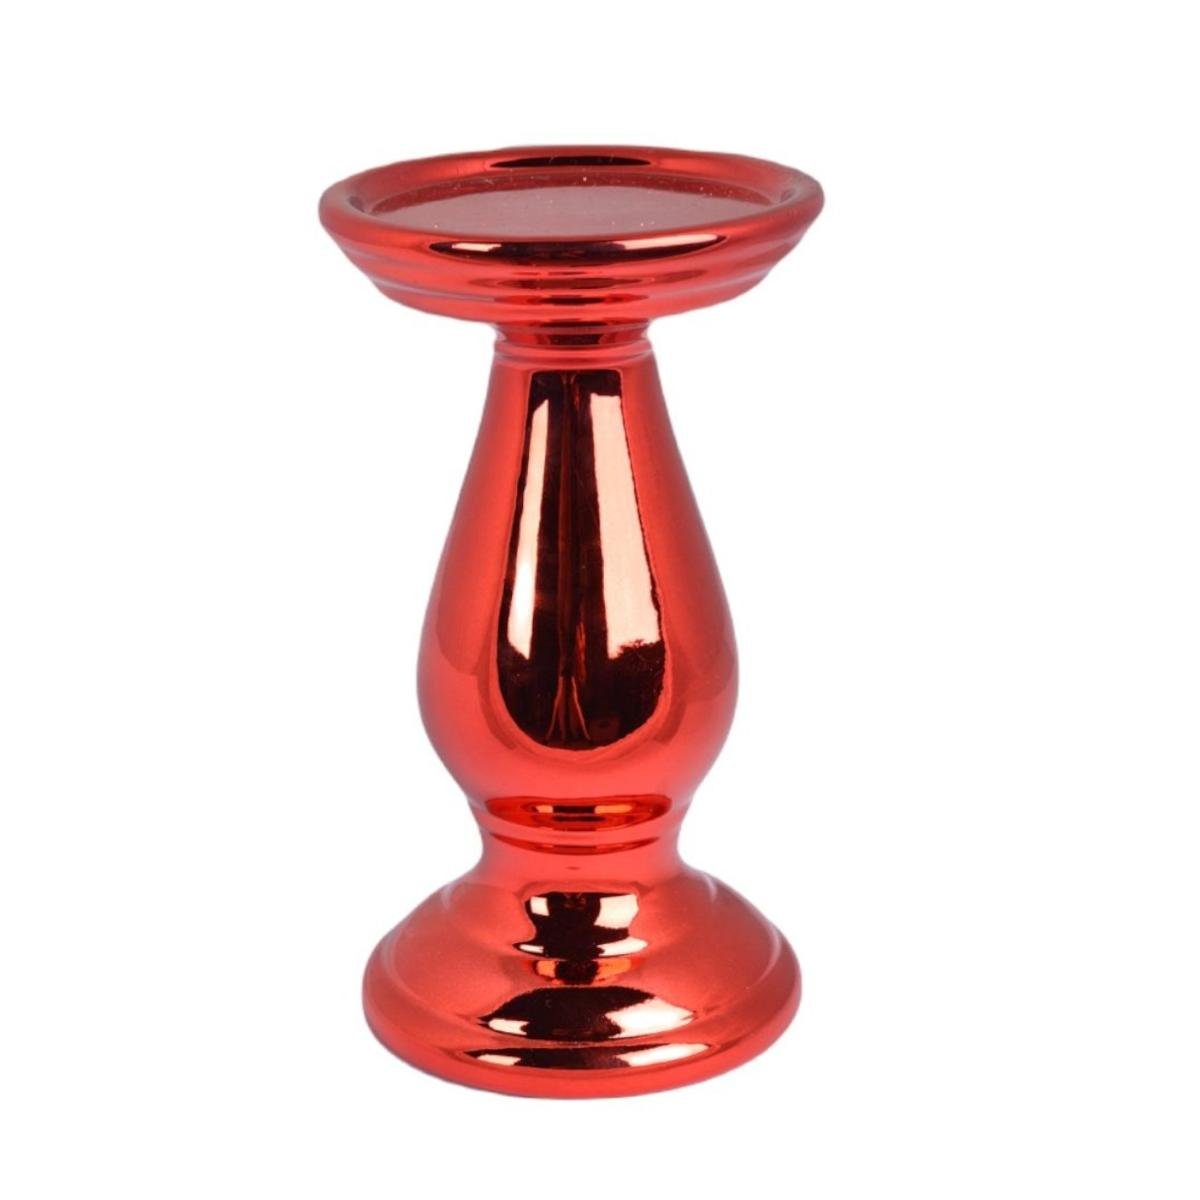 Czerwony lichtarz — świecznik Umowero 16 cm